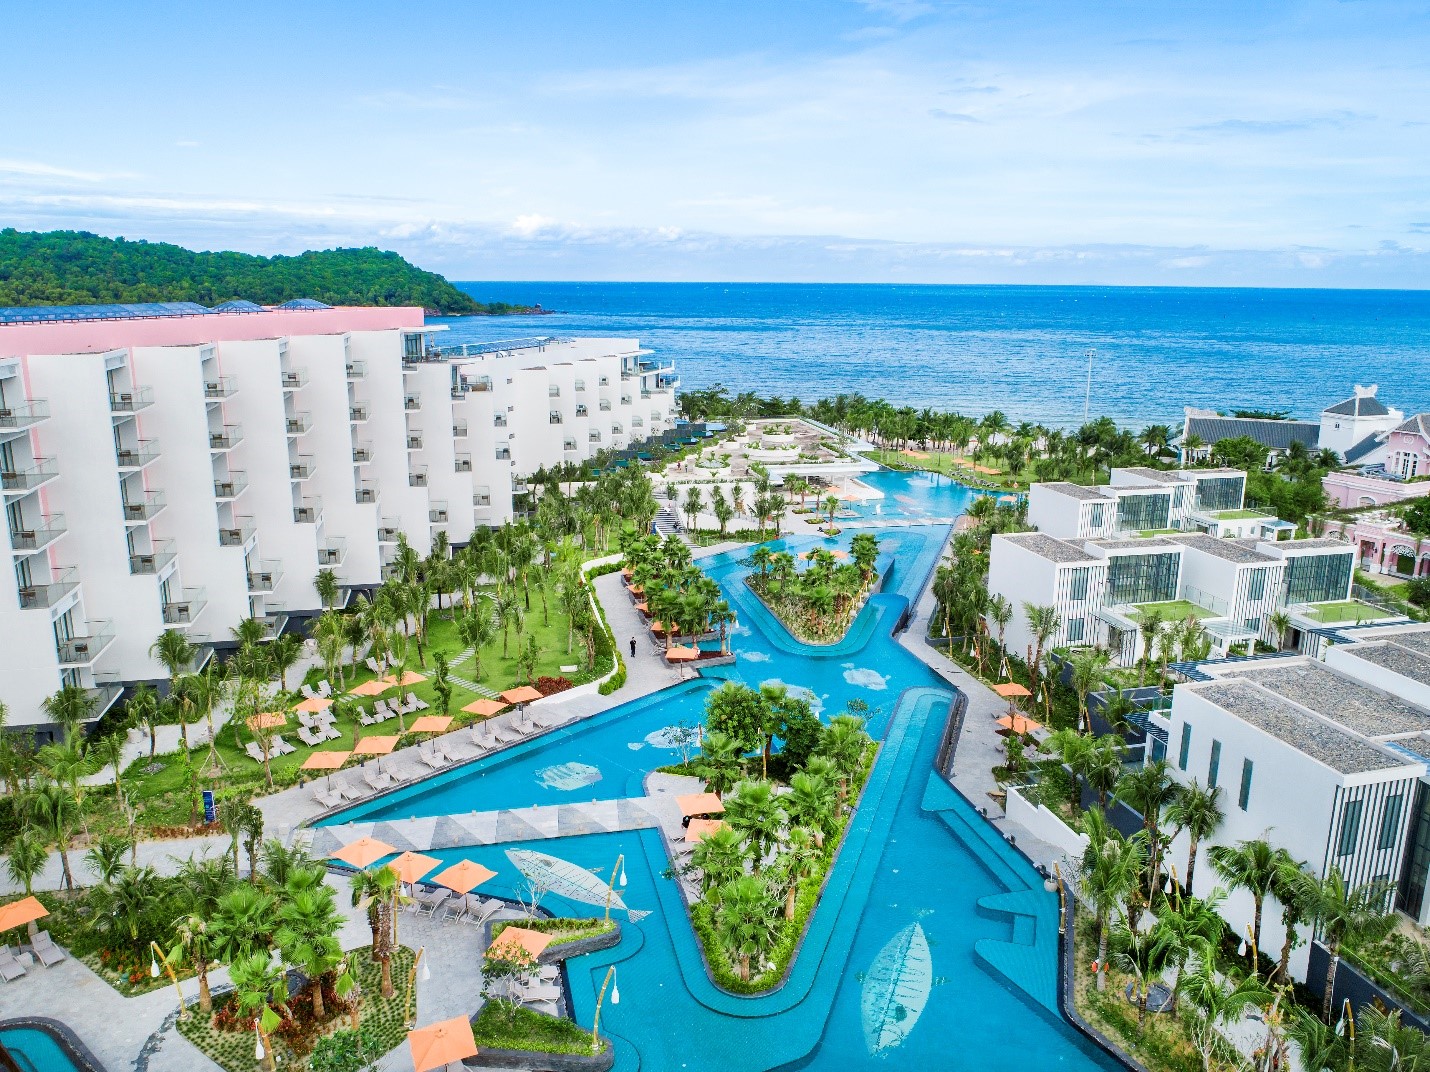 Bể bơi tràn bờ trong khu nghỉ dưỡng Premier Residences Phu Quoc Emerald Bay